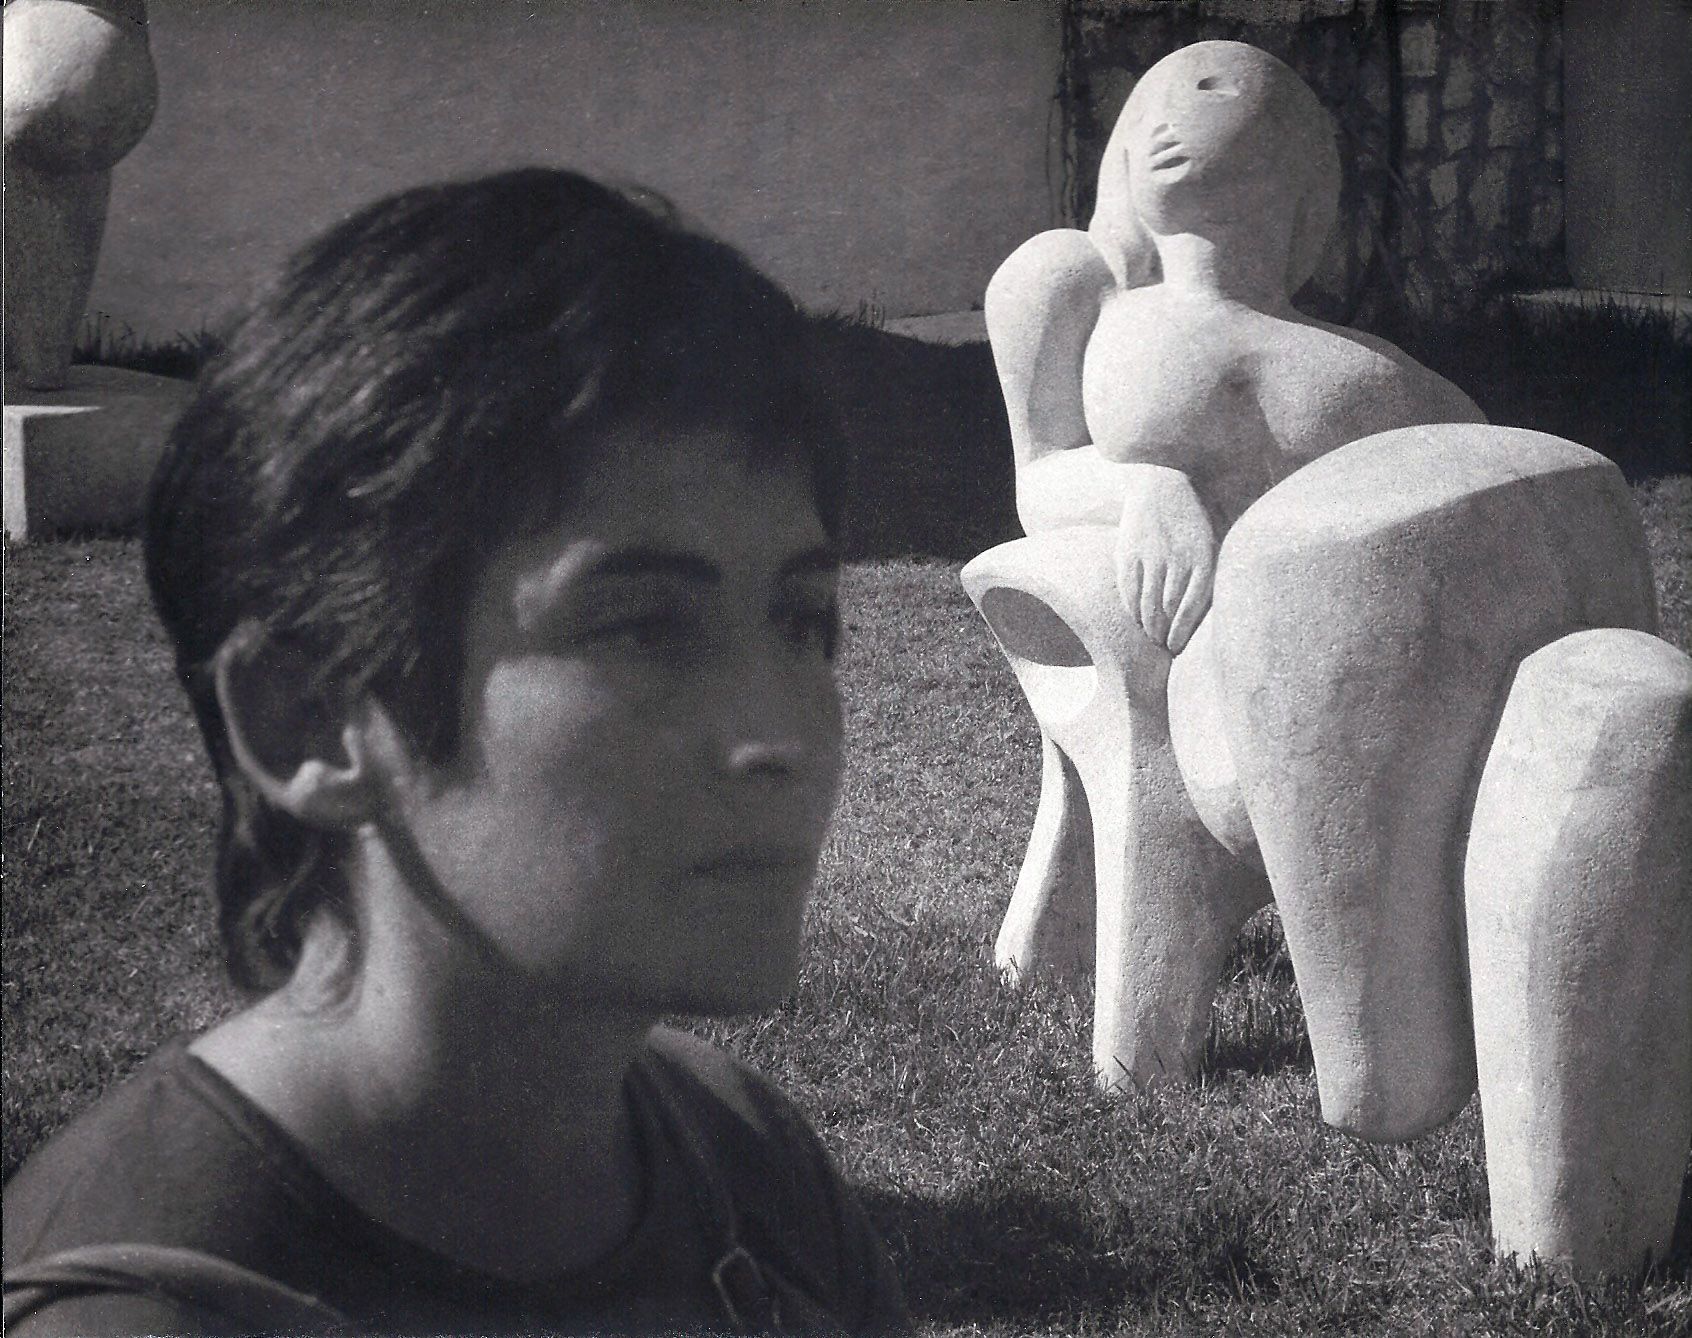 Laverón y la obra 'Chaise longe', en los años 70